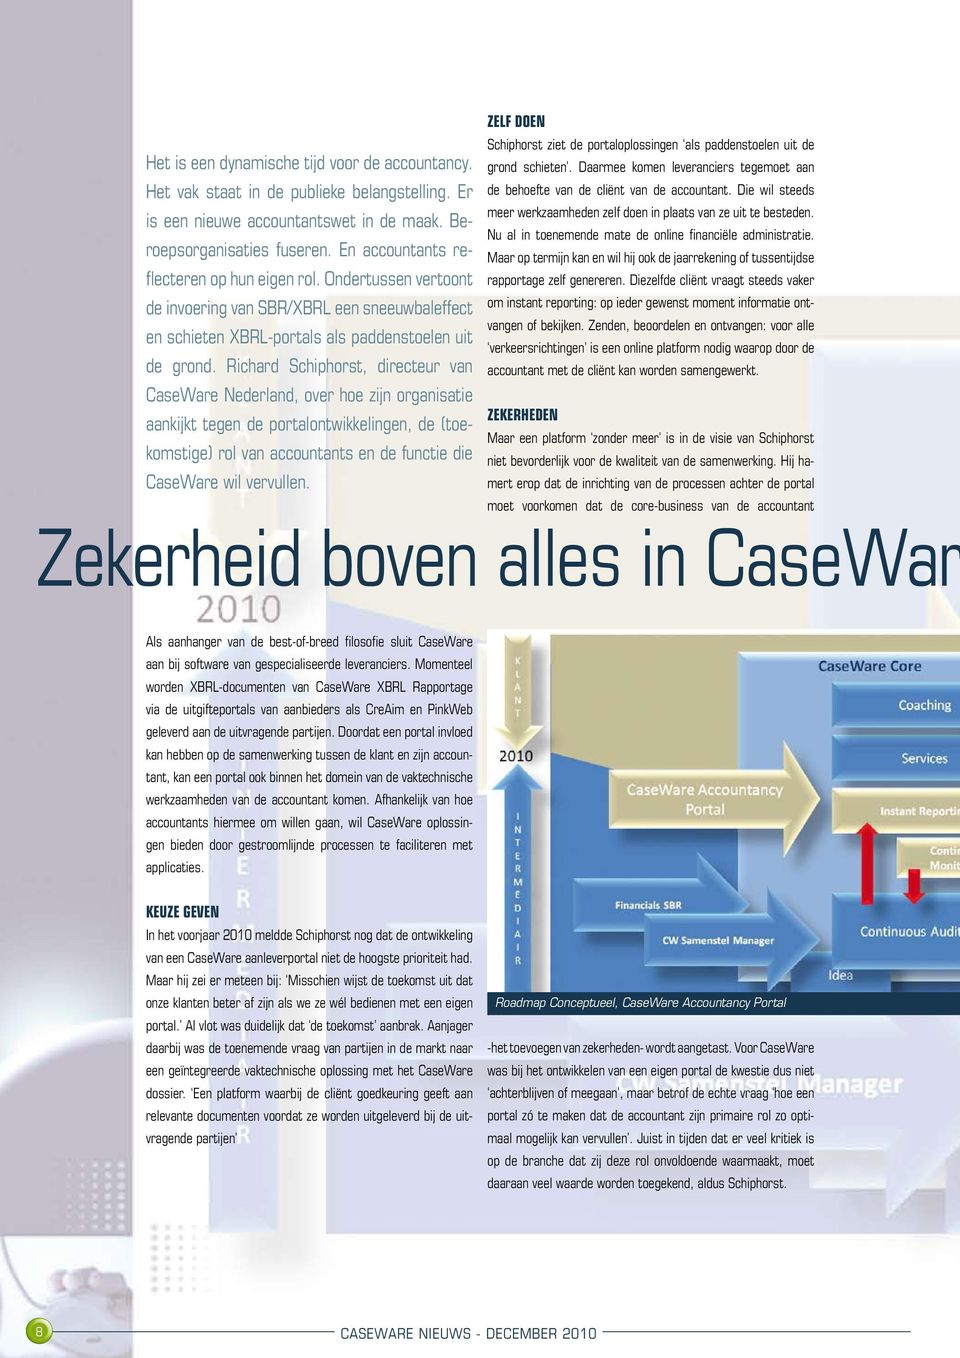 Richard Schiphorst, directeur van CaseWare Nederland, over hoe zijn organisatie aankijkt tegen de portalontwikkelingen, de (toekomstige) rol van accountants en de functie die CaseWare wil vervullen.